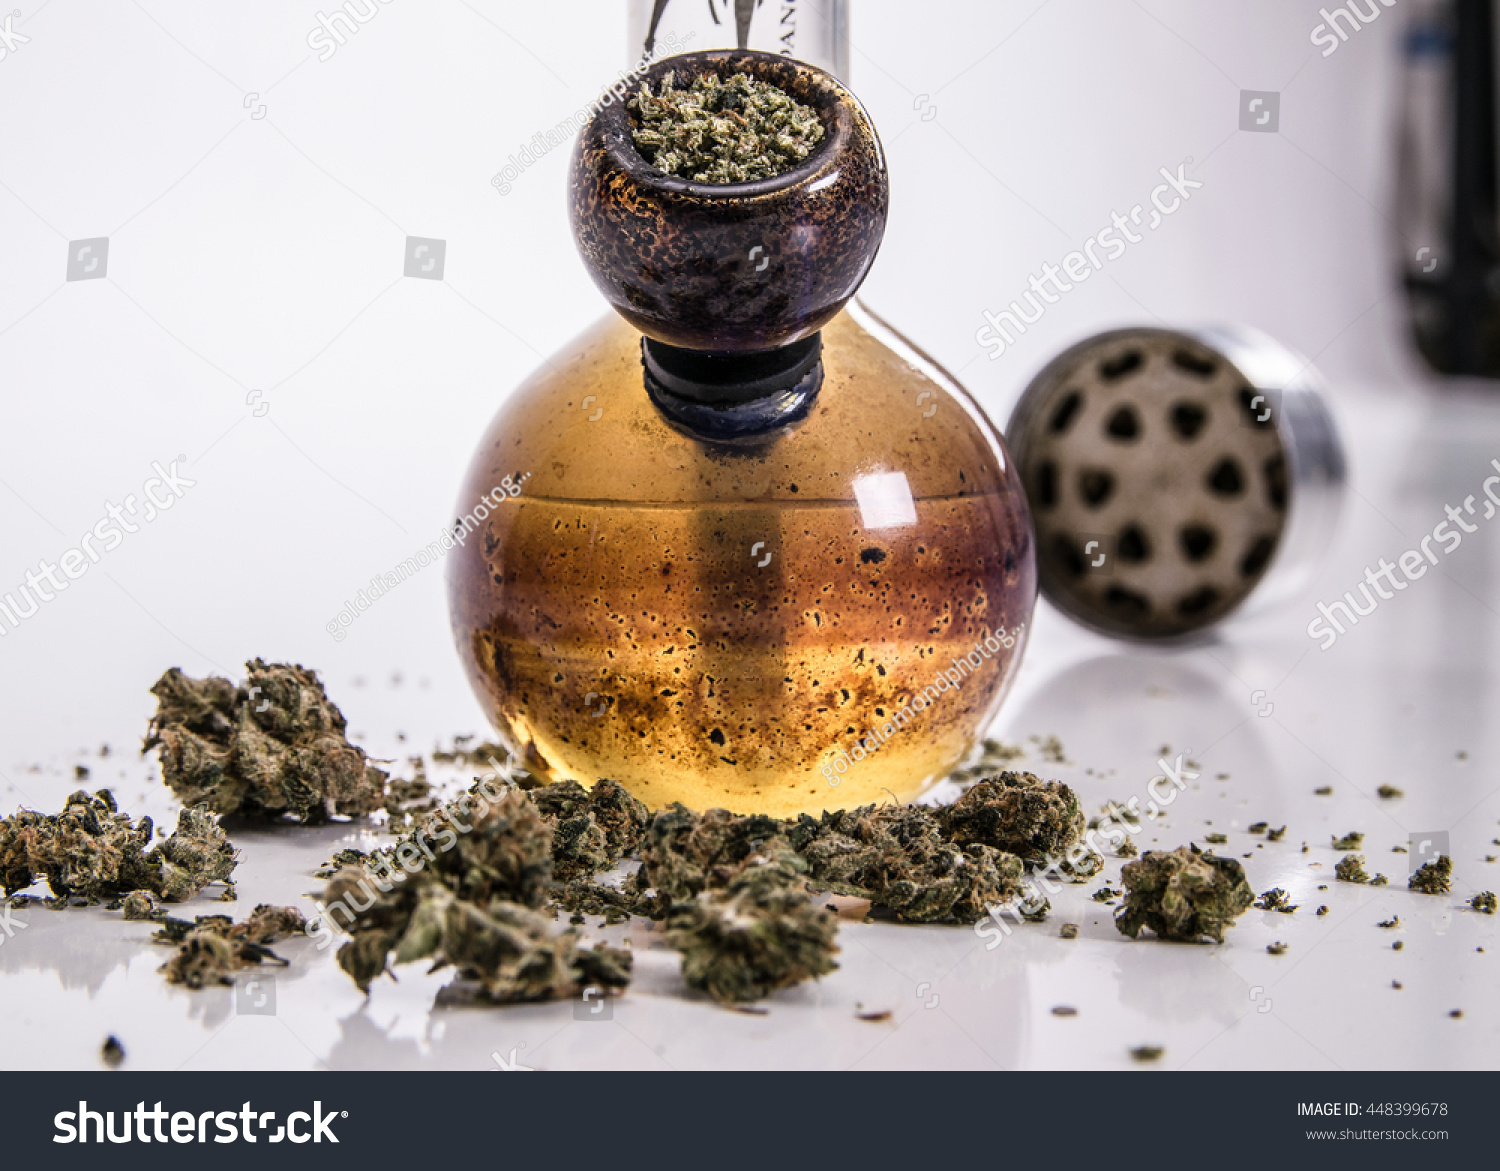  Bong  And Marijuana  Stock Photo 448399678 Shutterstock